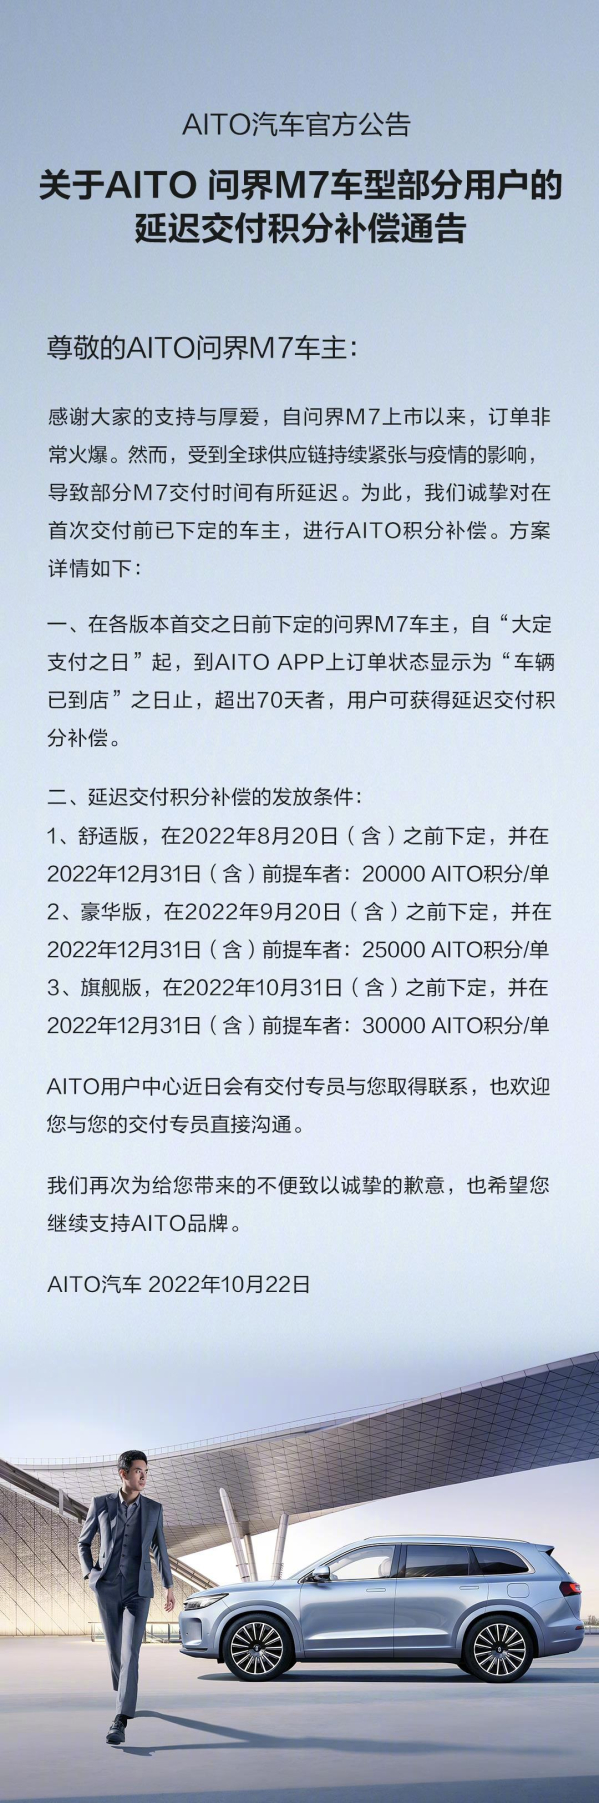 问界M7延迟交付 准车主别慌 AITO官方已公布补偿通告